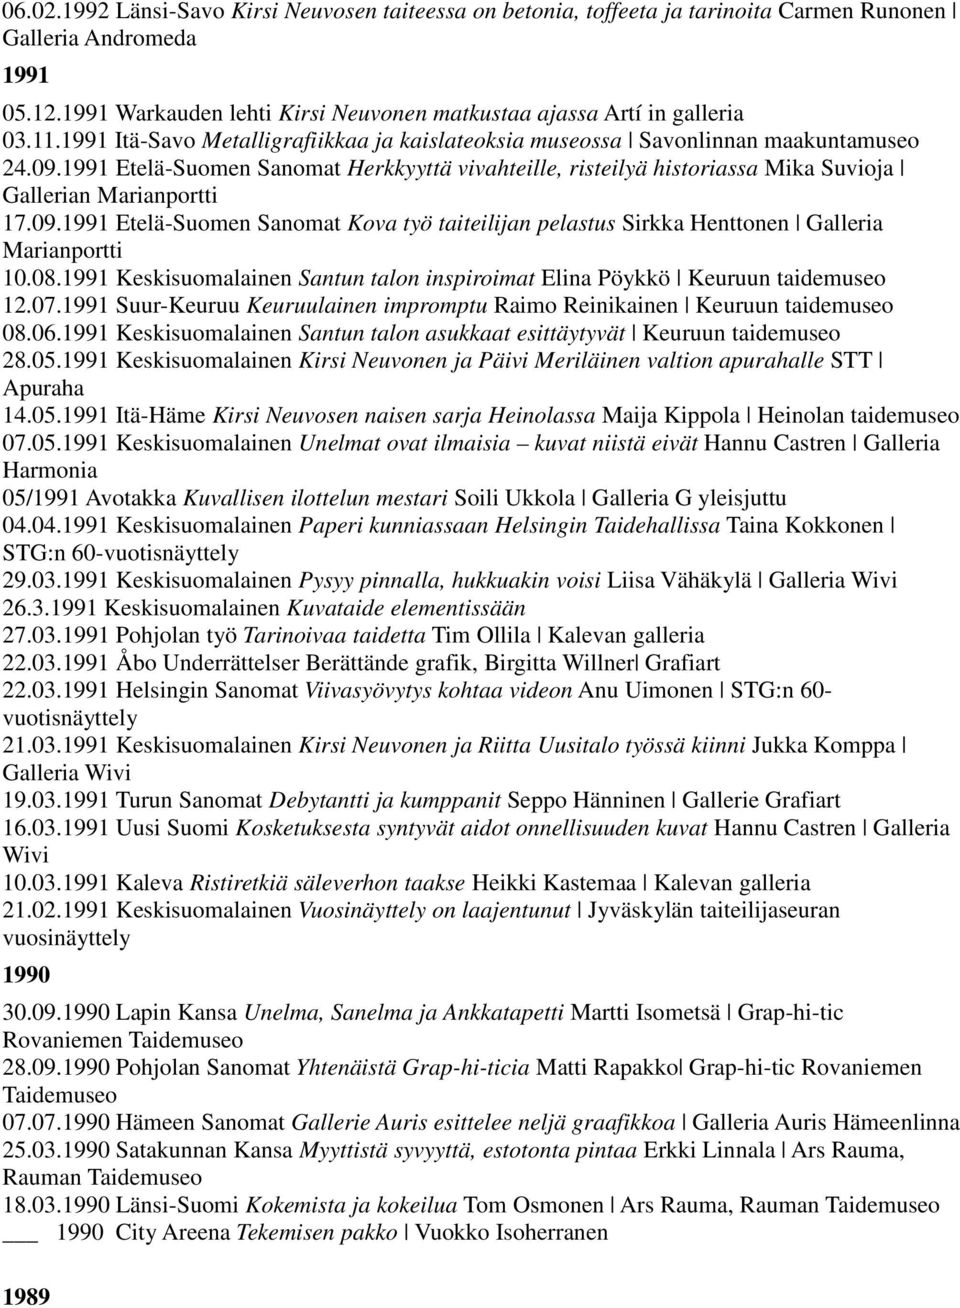 1991 Etelä-Suomen Sanomat Herkkyyttä vivahteille, risteilyä historiassa Mika Suvioja Gallerian Marianportti 17.09.